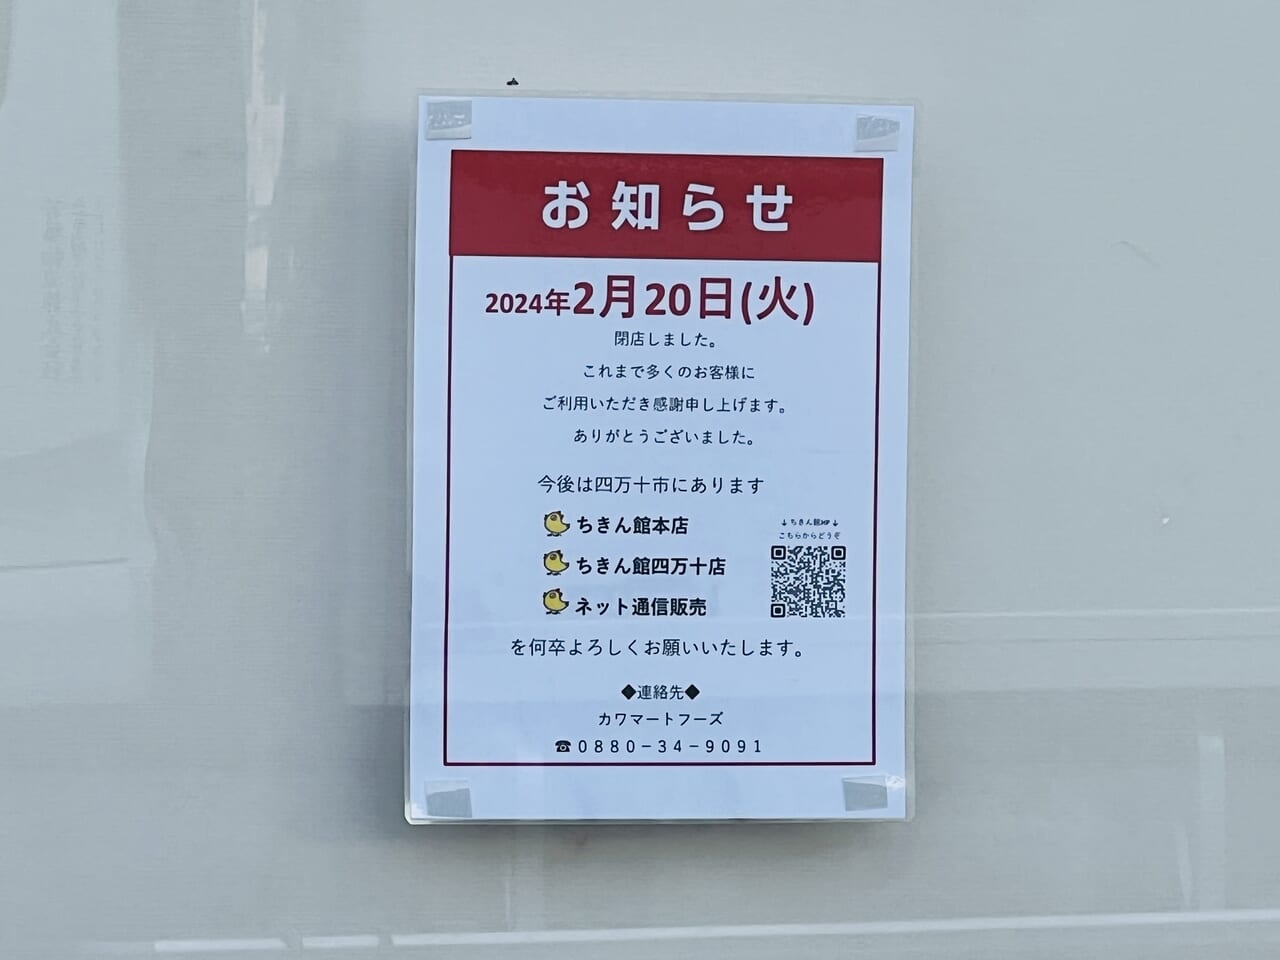 2024年2月20日に閉店した「チキン館 高知竹島店」の閉店のお知らせ